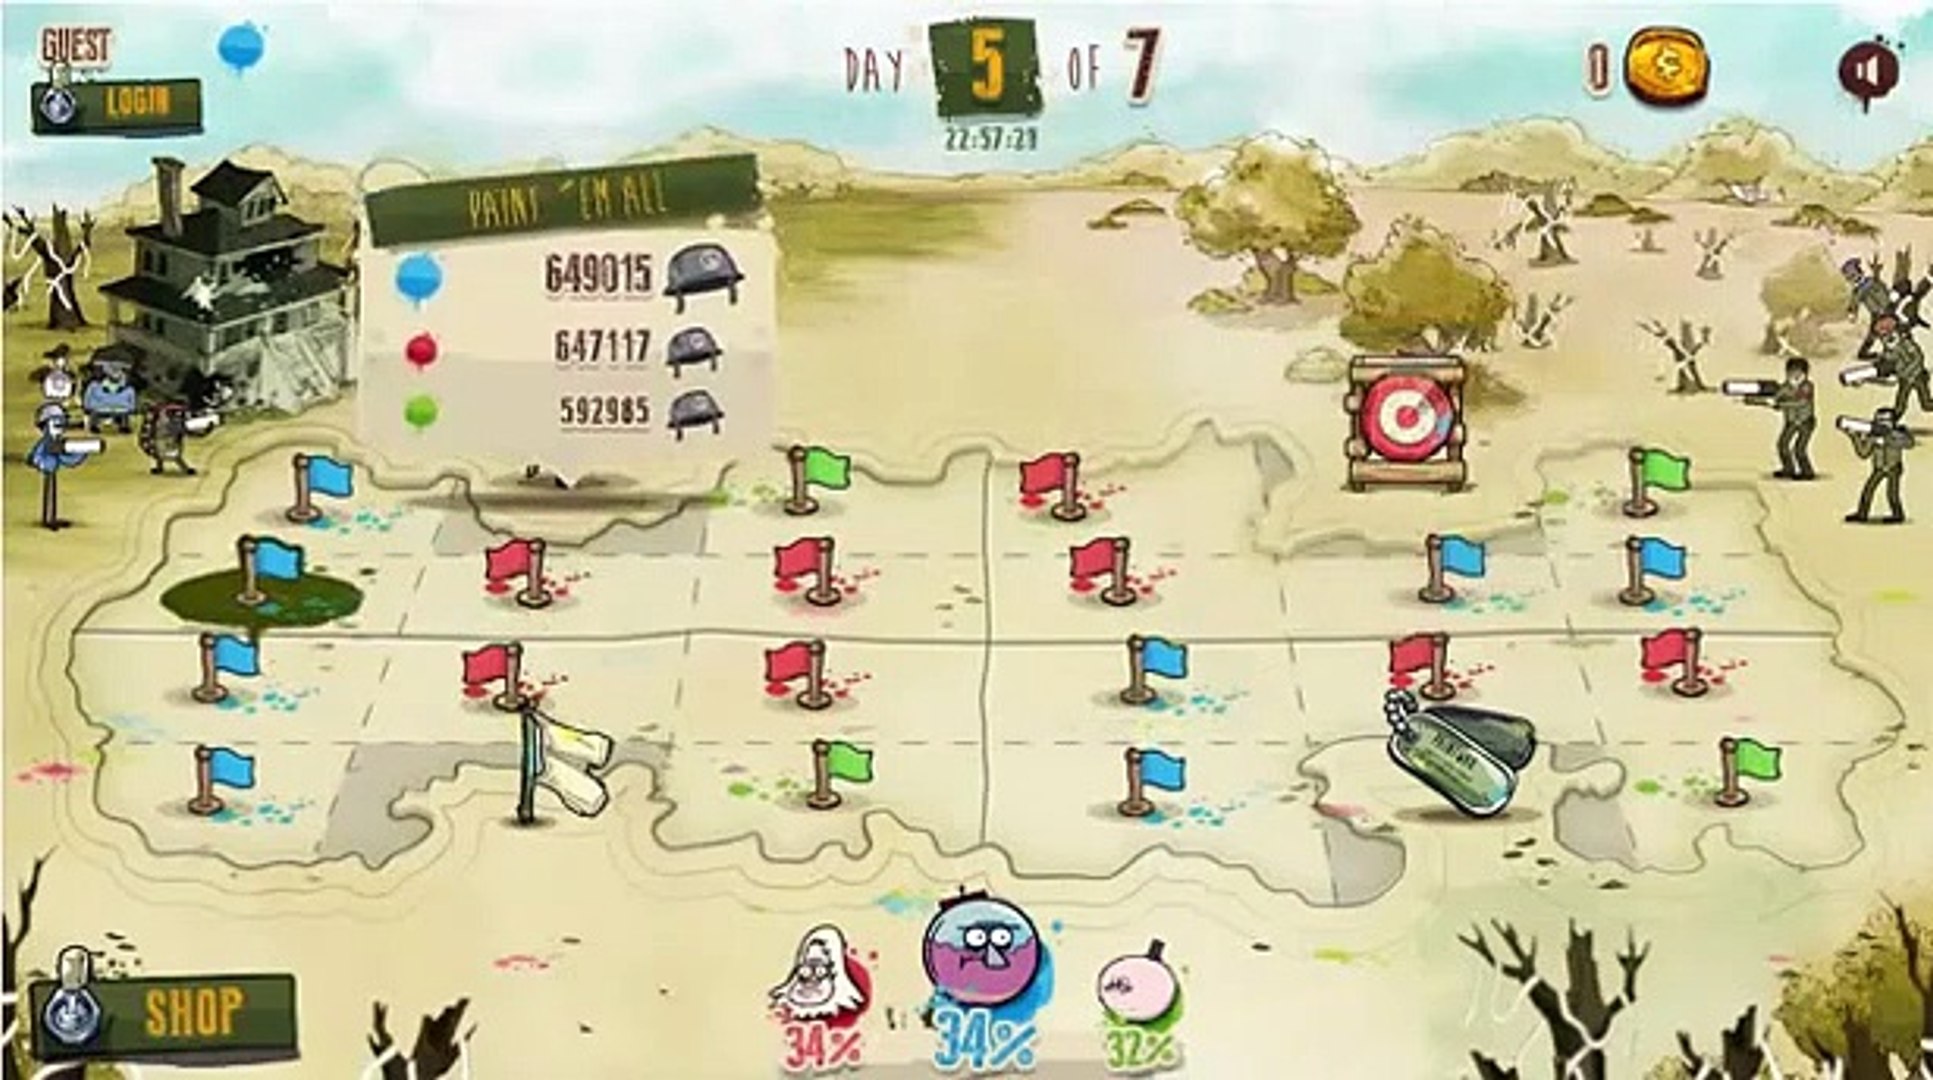 Cartoon Network Games: Regular Show - Paint War - video Dailymotion